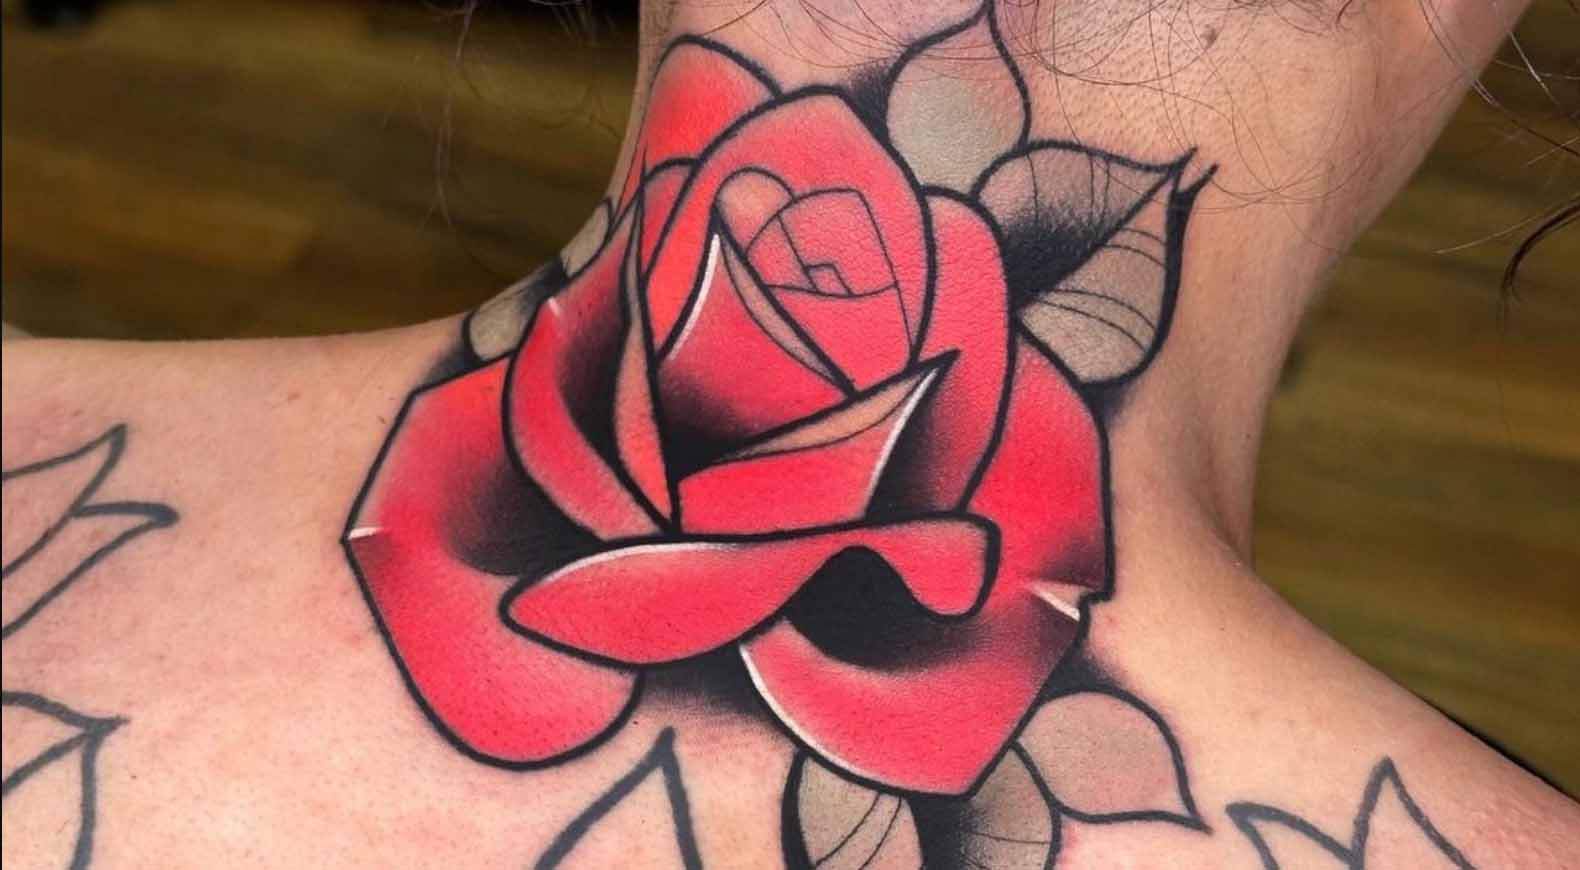 ¿Por qué hacerse un tatuaje de una rosa?